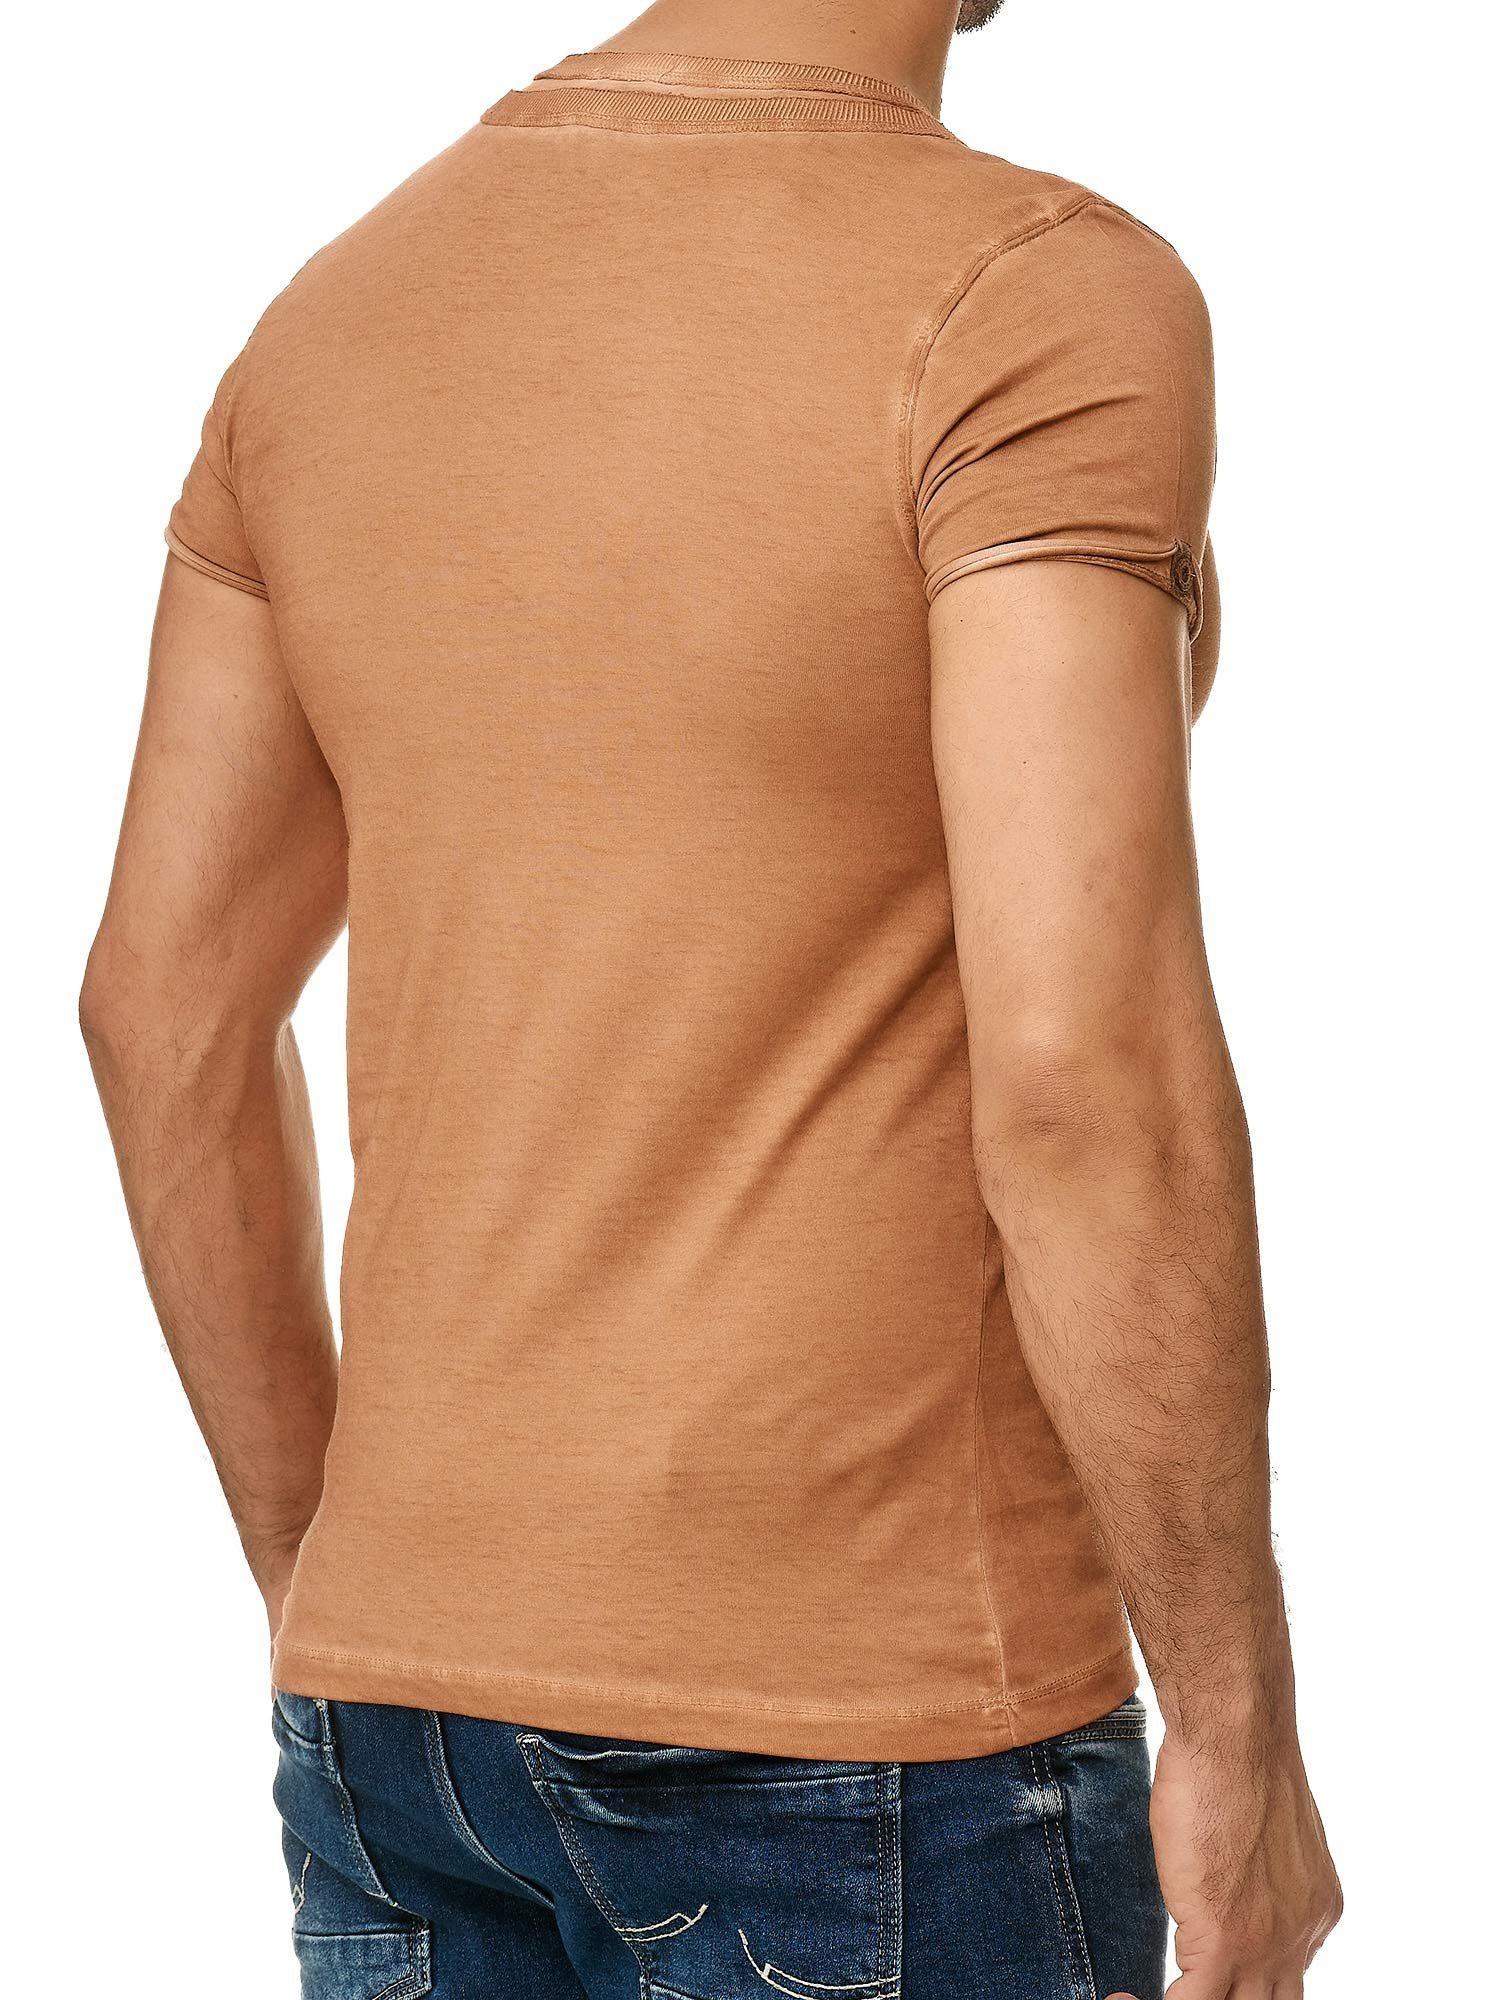 Tazzio T-Shirt 4022 in und Schulter mit Kragen Knopfleiste camel an Ölwaschung trendiger stylischem der